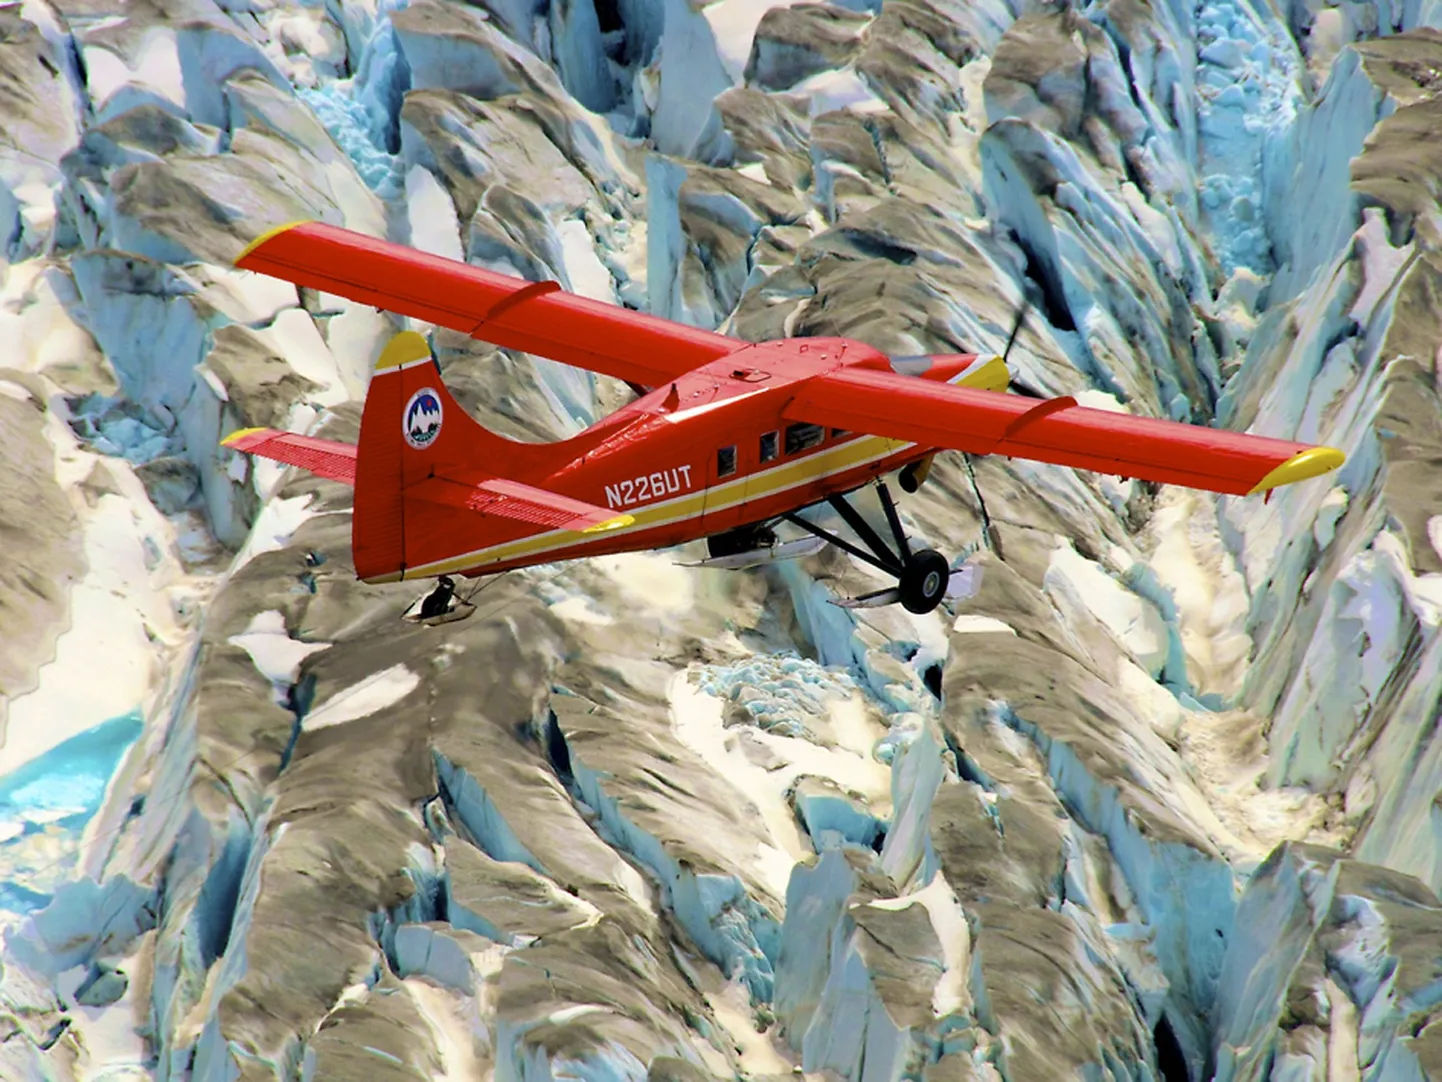 DHC-3 Otter Alaska vaatamisväärsuste kohal.